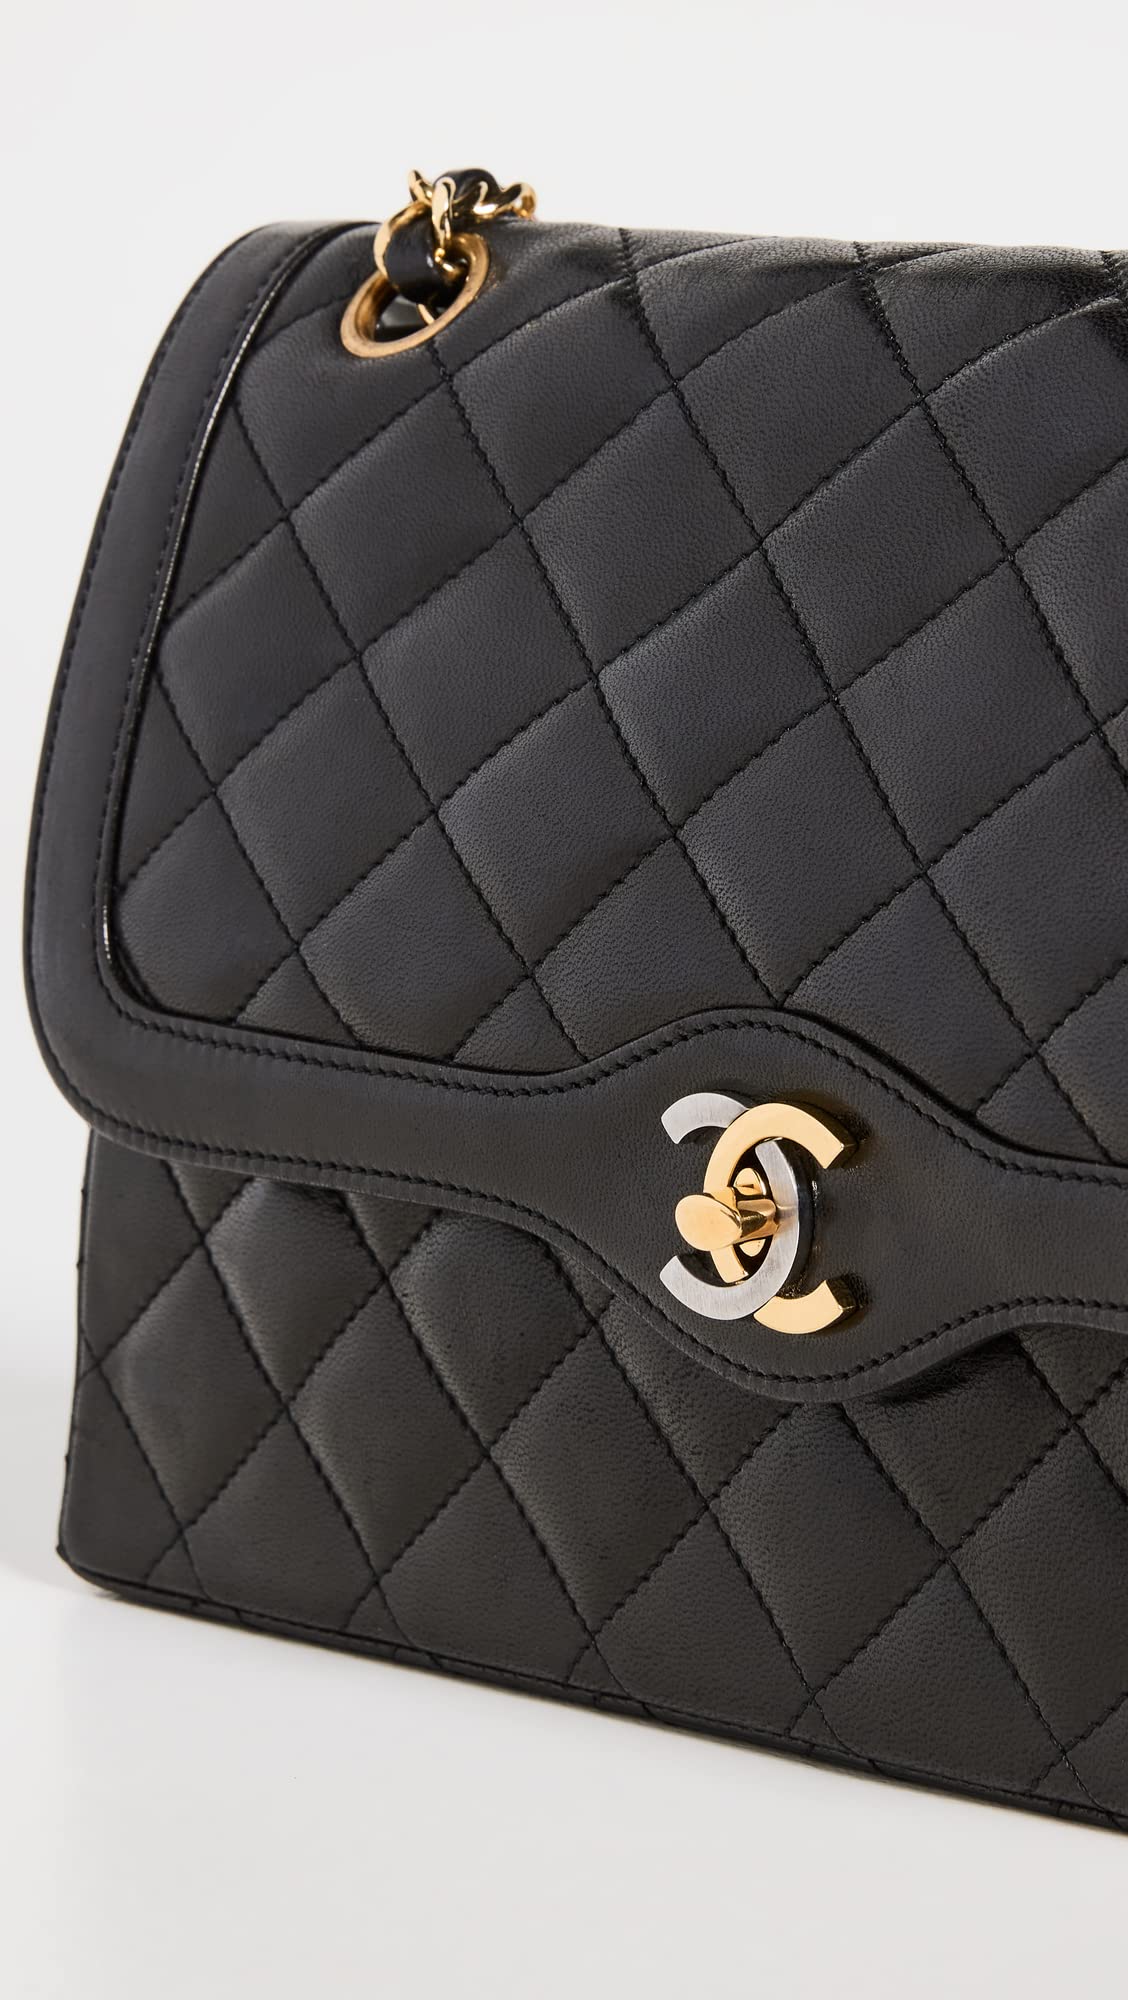 CHANEL Women's Pre-Loved Black Paris Shoulder Bag